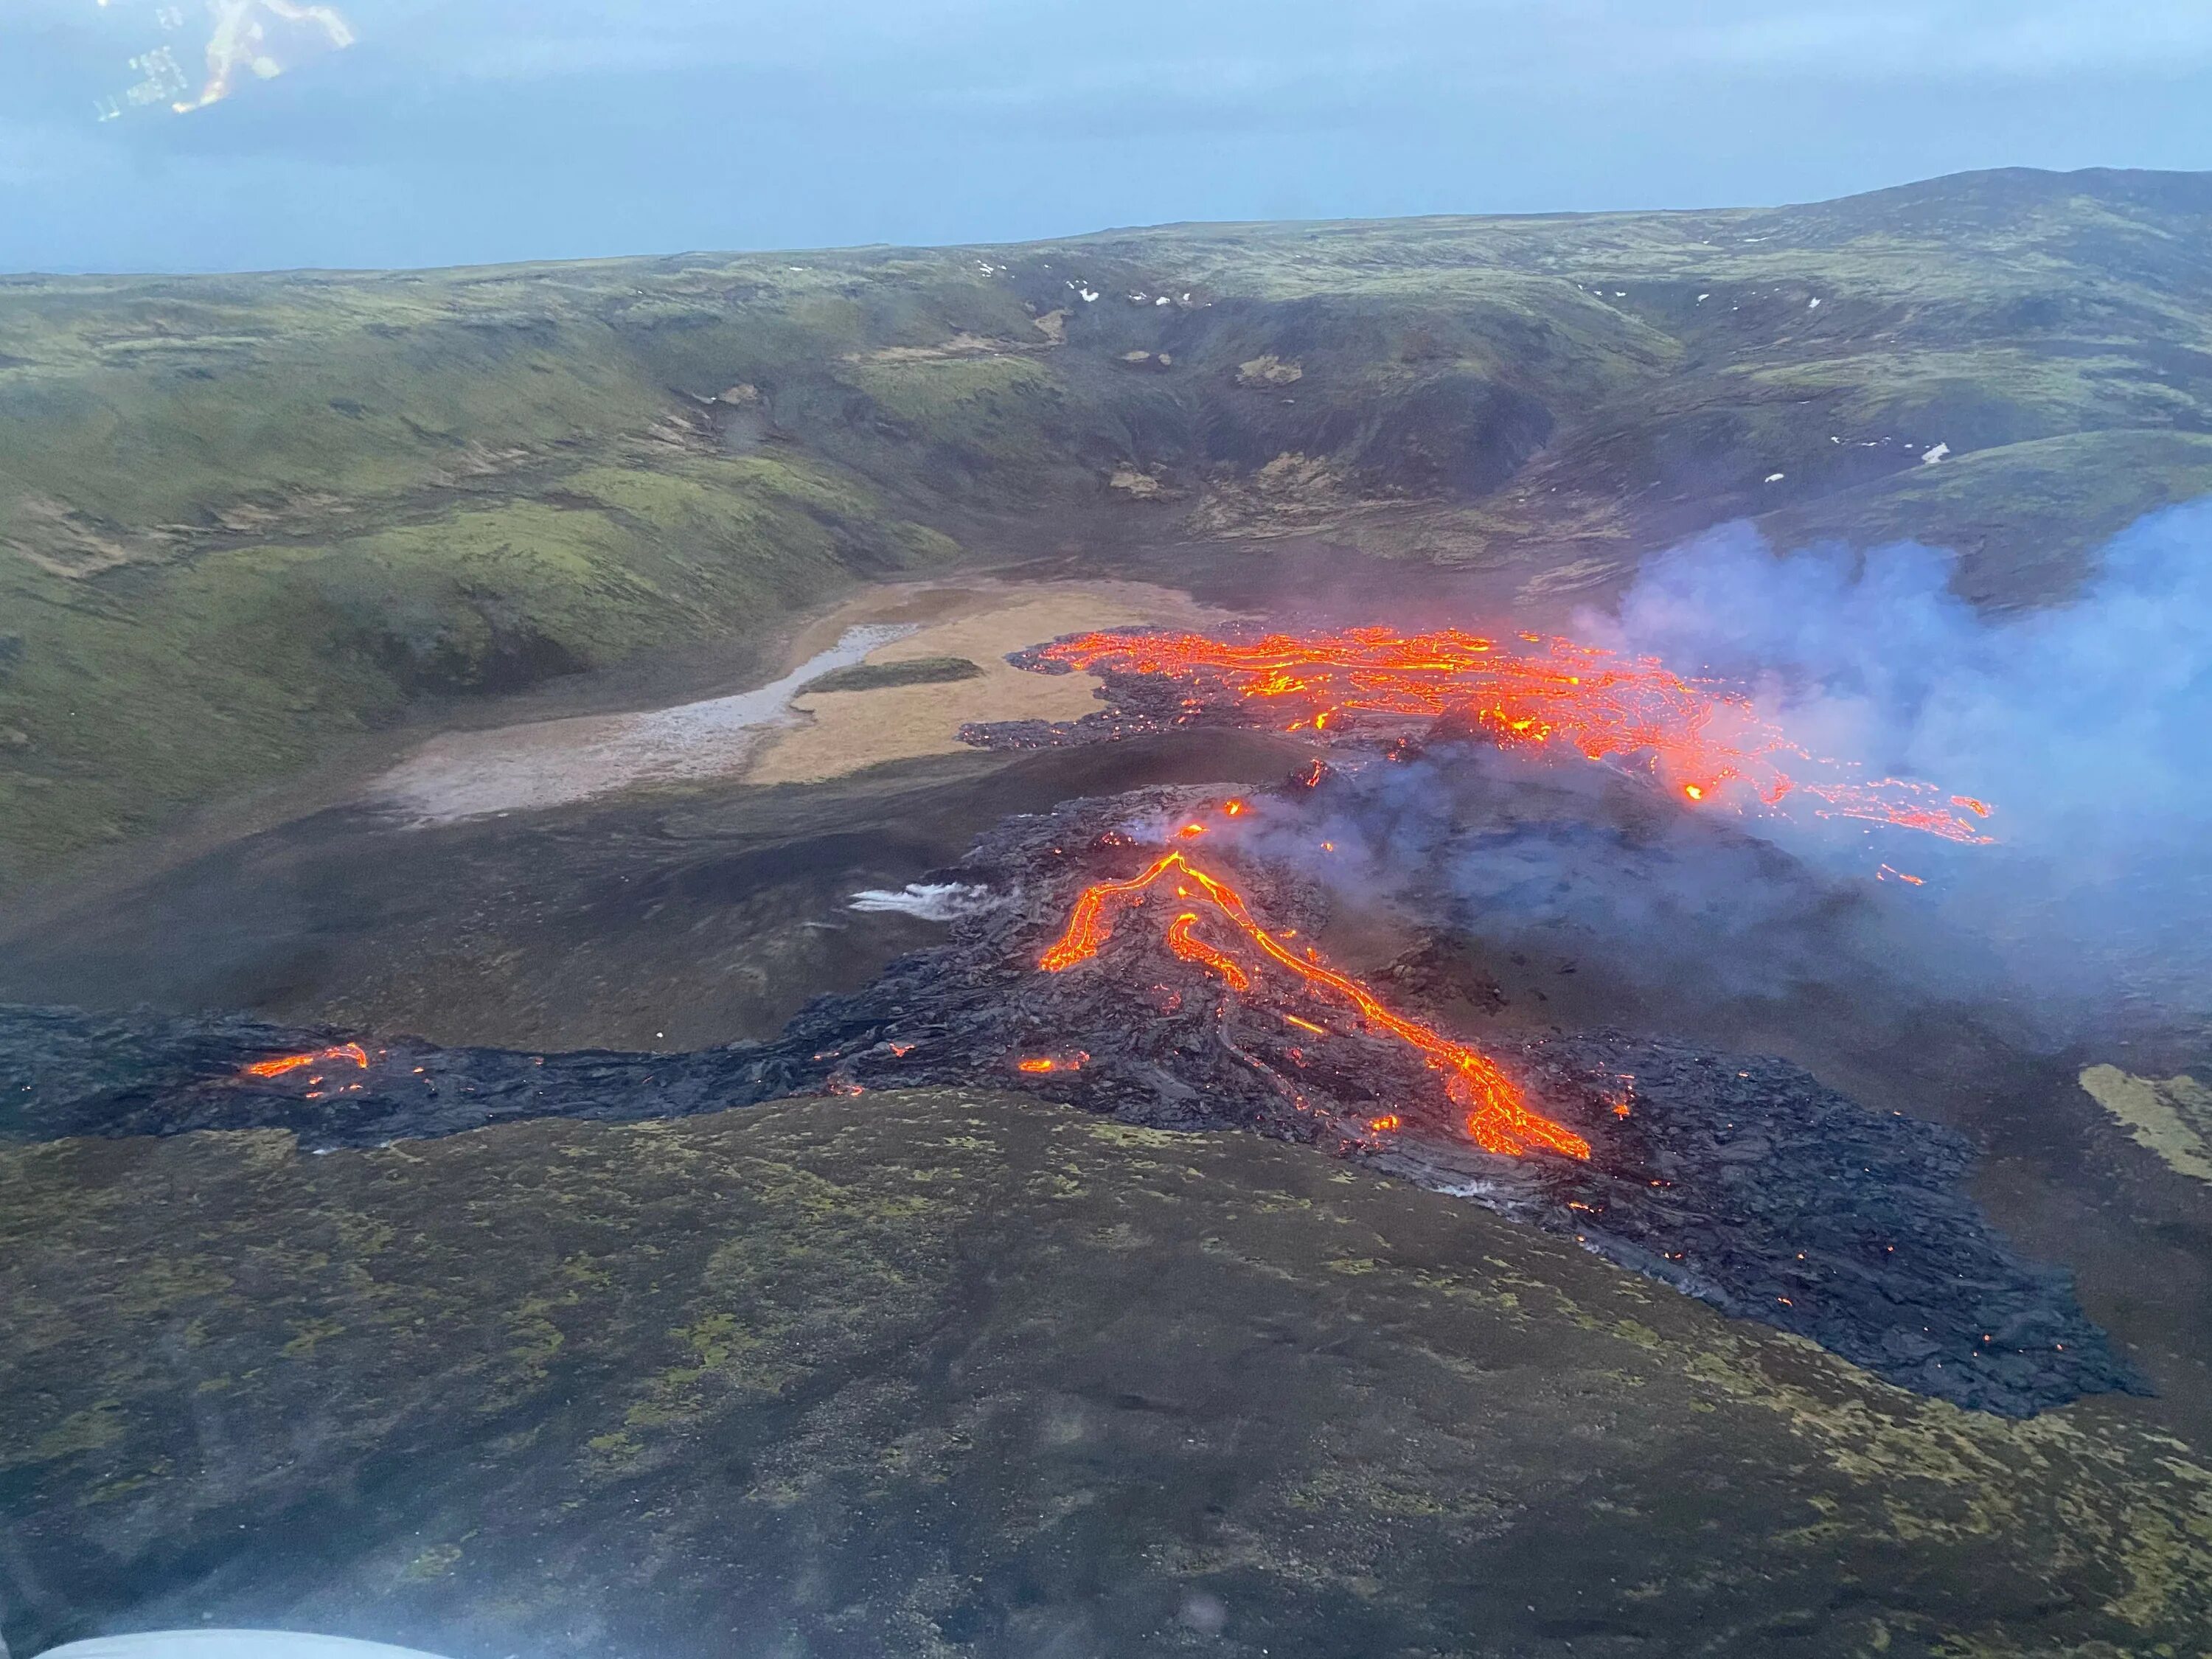 Извержение вулкана в Исландии 2021. Извержение вулкана в Исландии Эйяфьятлайокудль. Вулкан Исландии Эйяфьятлайокудль 2010. Вулкан Эйяфьятлайокудль извержение 2010. Сильные землетрясения извержения вулканов мощные гейзеры